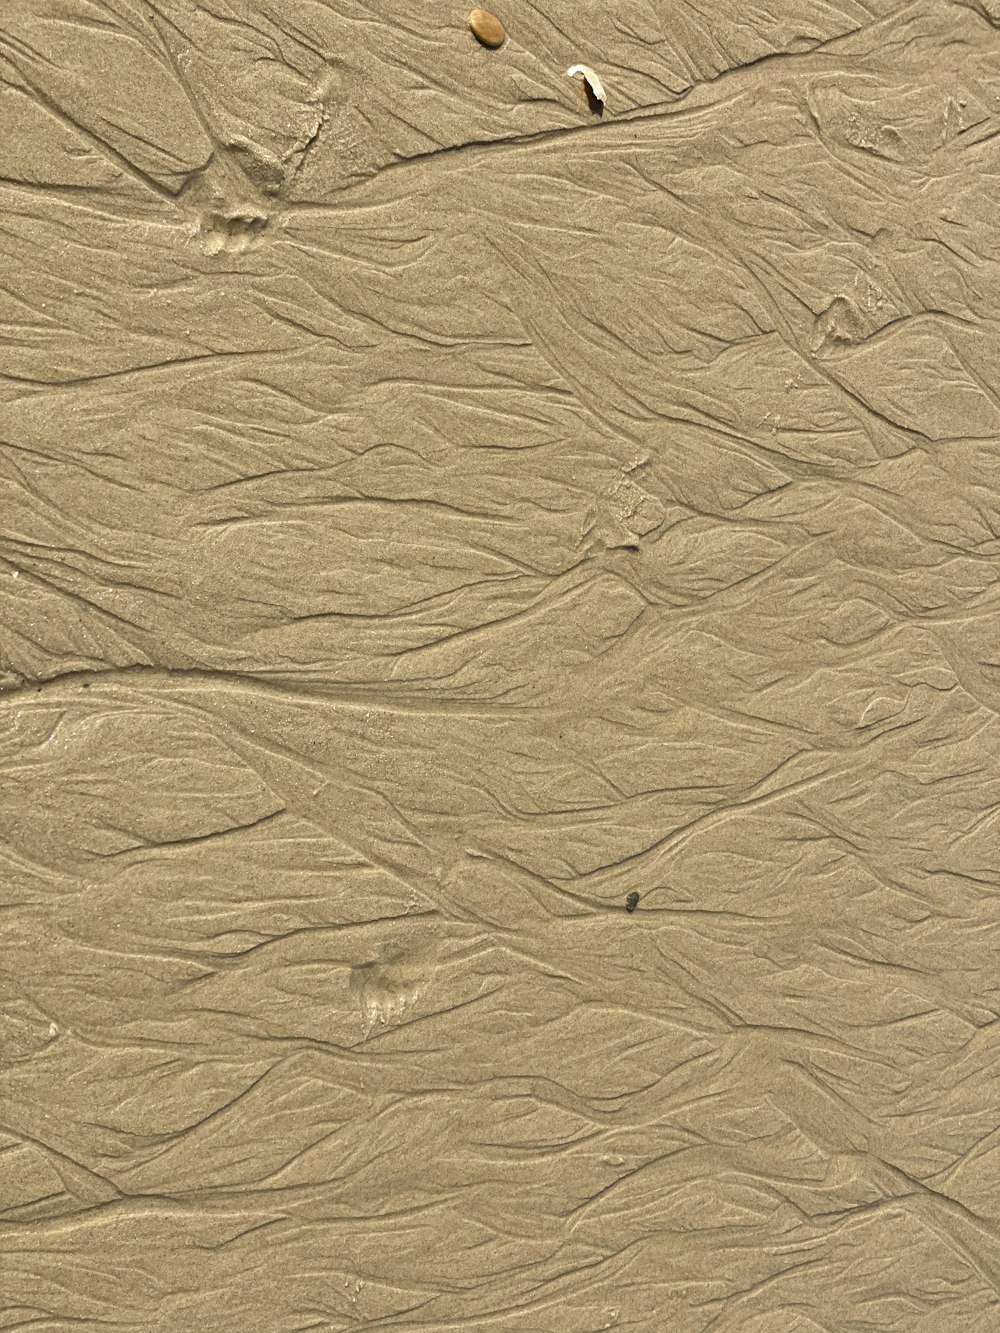 하얀 모래와 갈색 모래